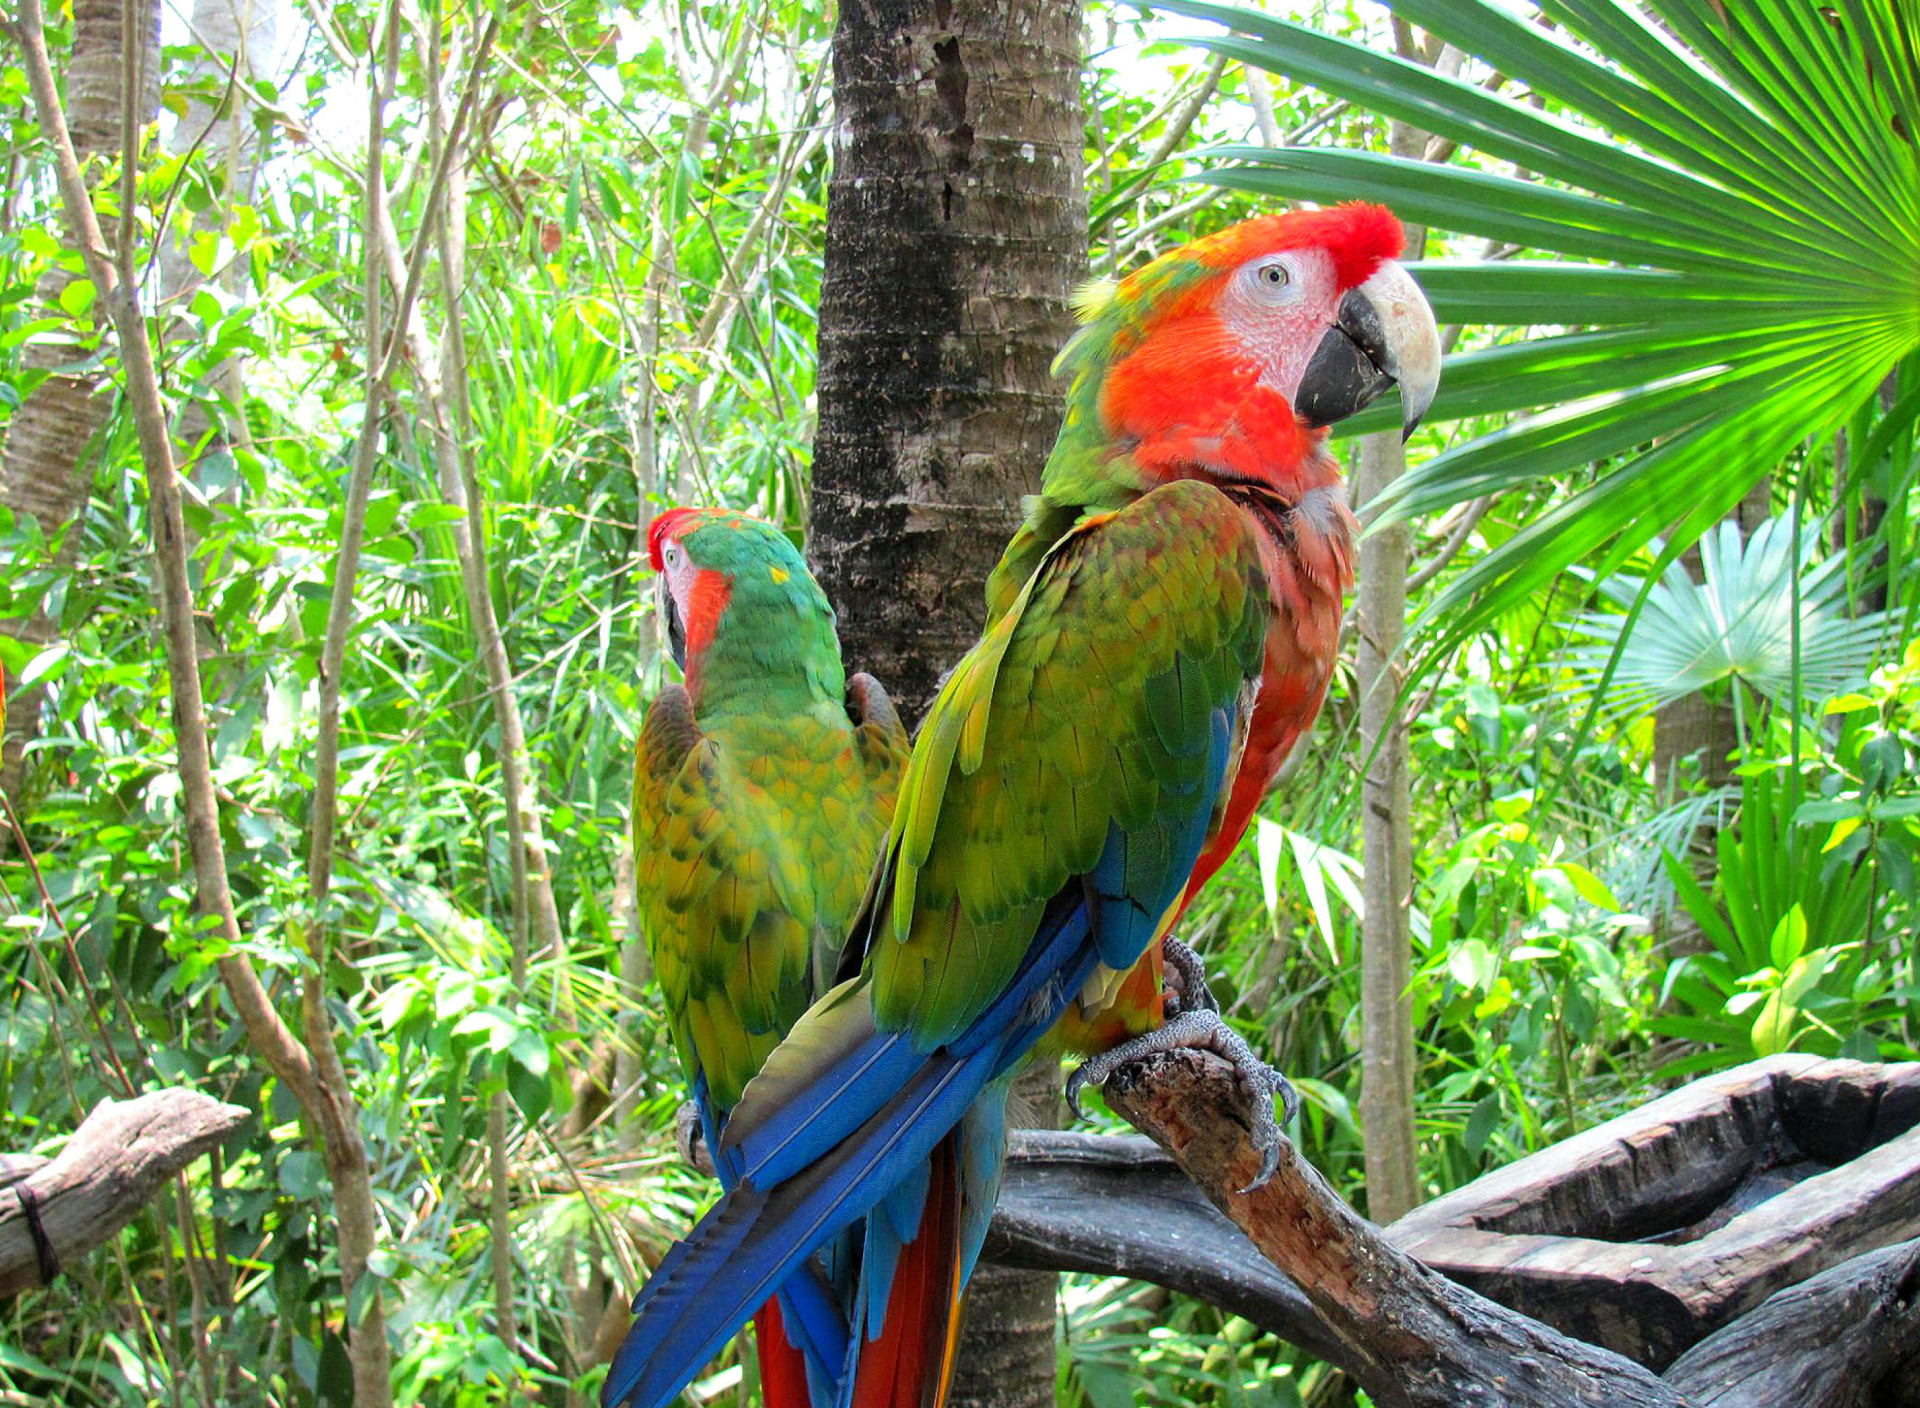 Sfondi Macaw parrot Amazon forest 1920x1408